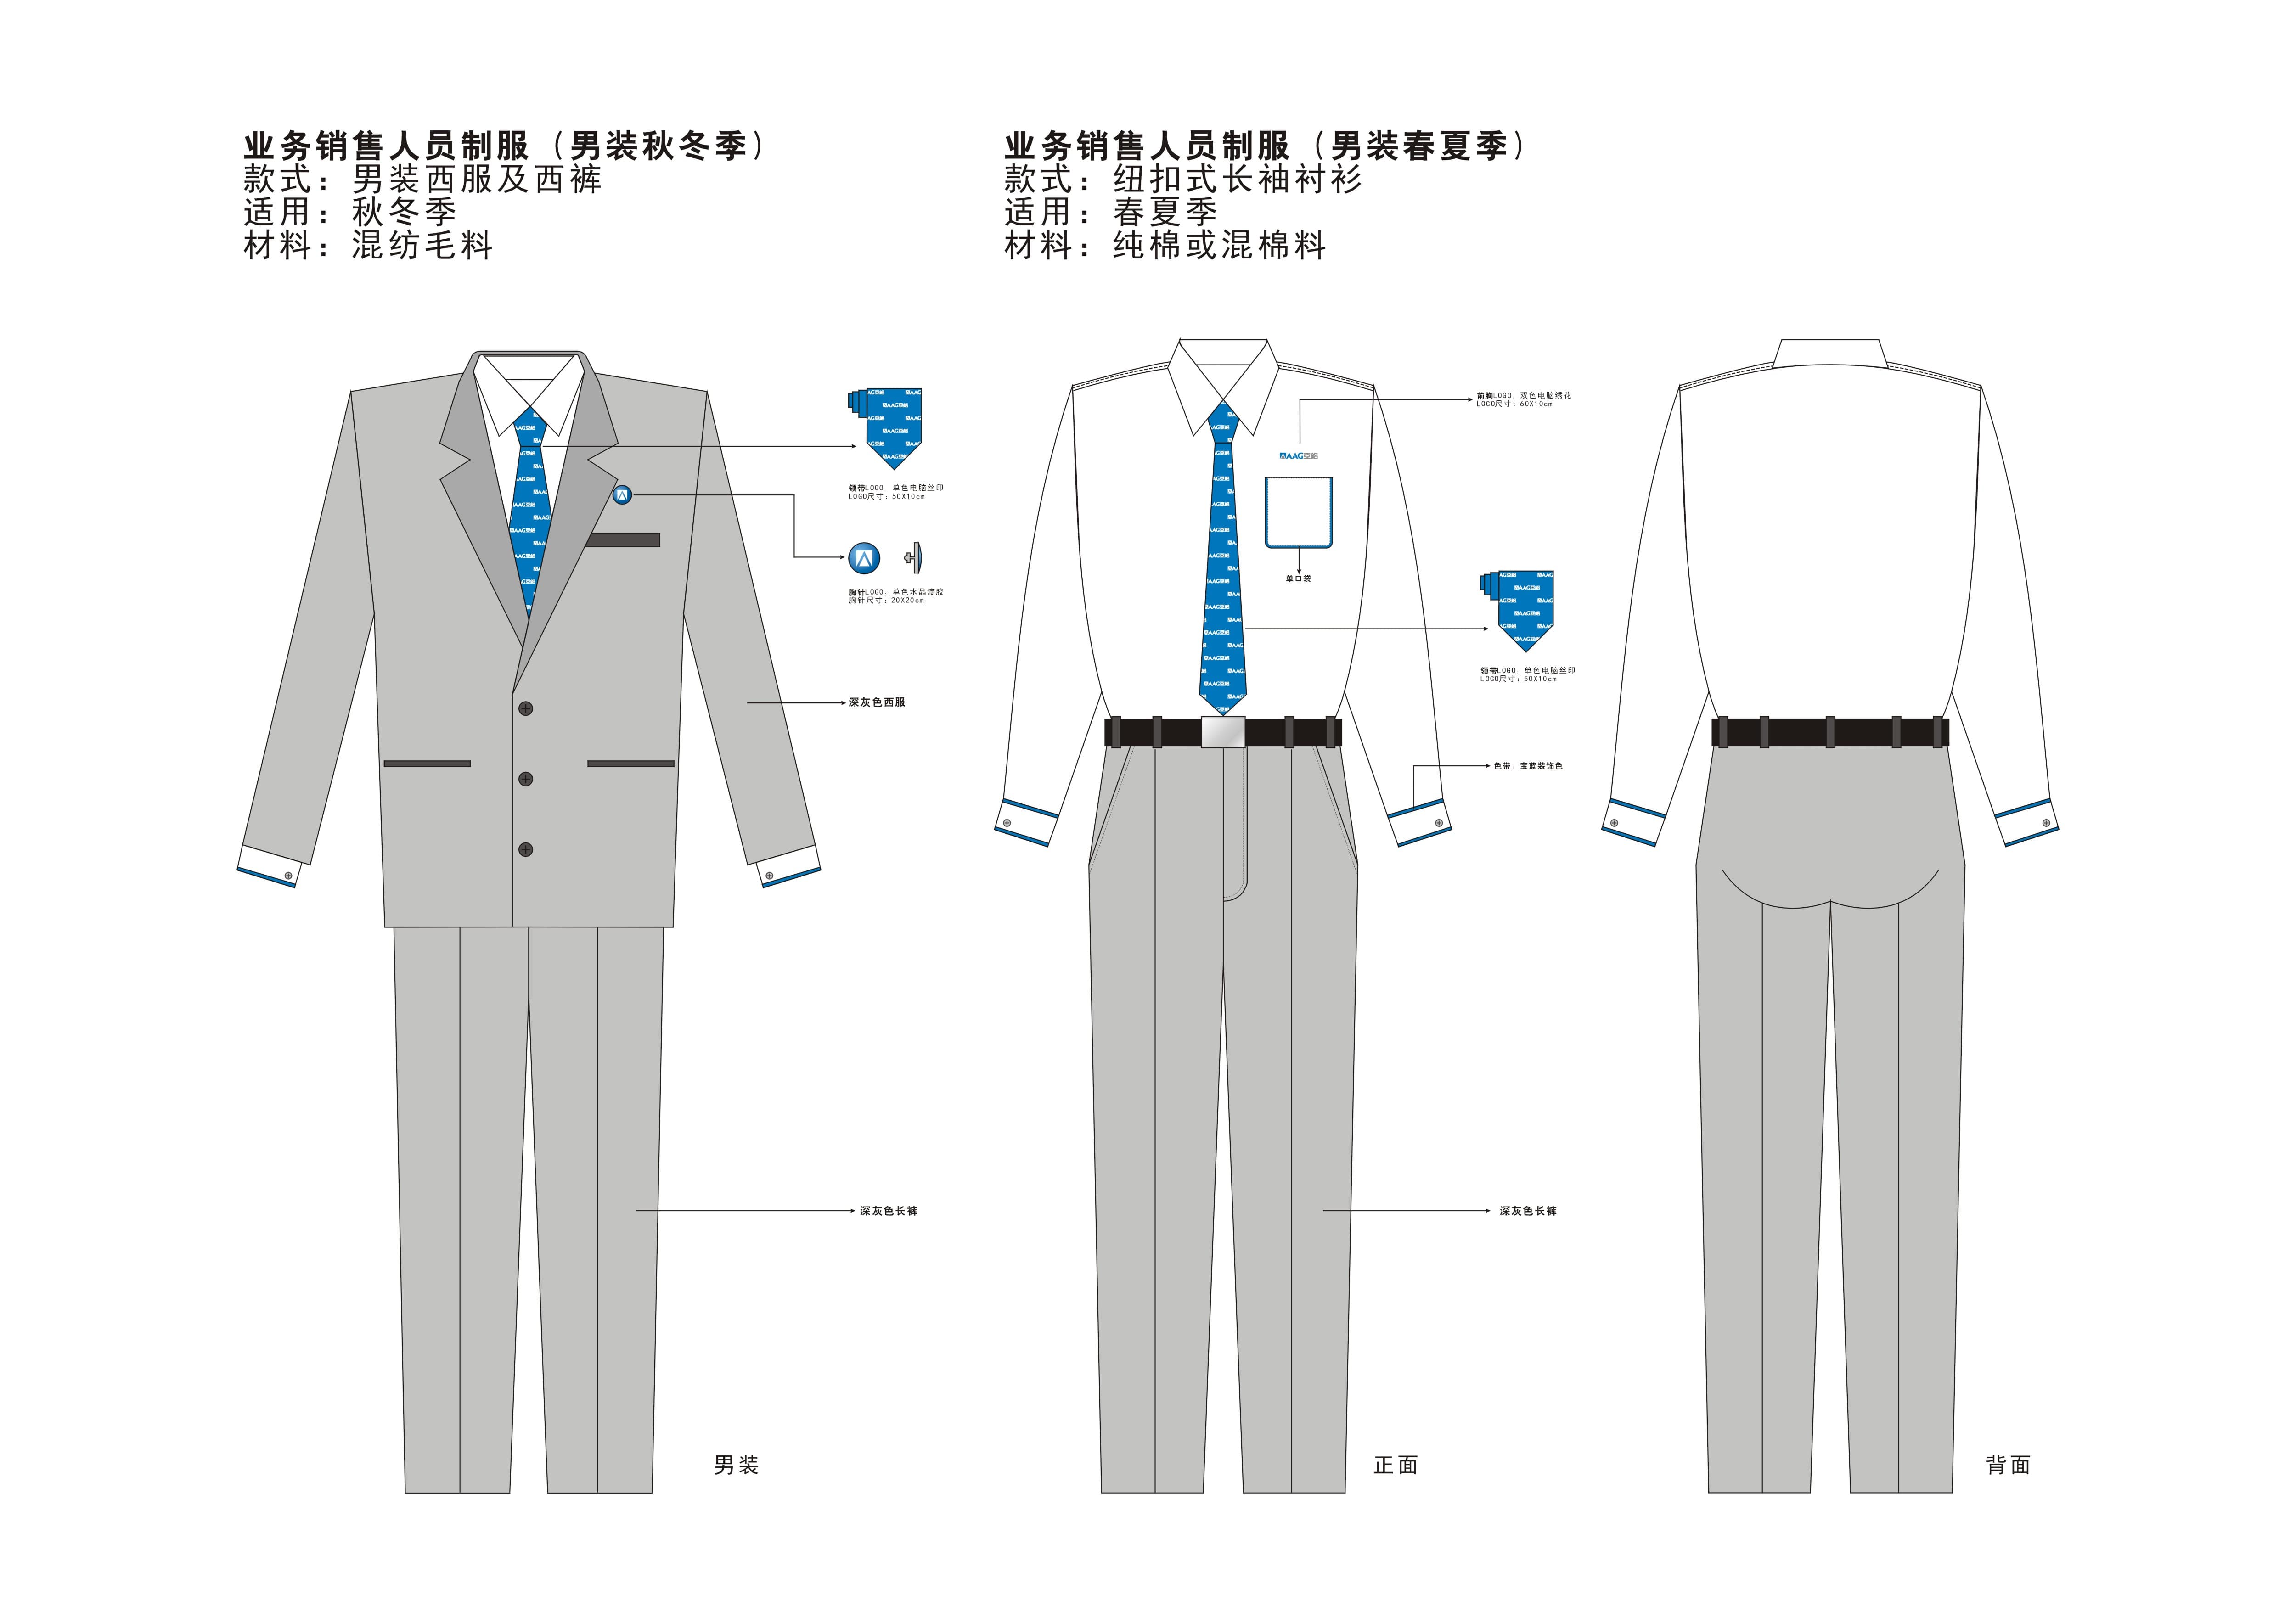 Guide uniform 1